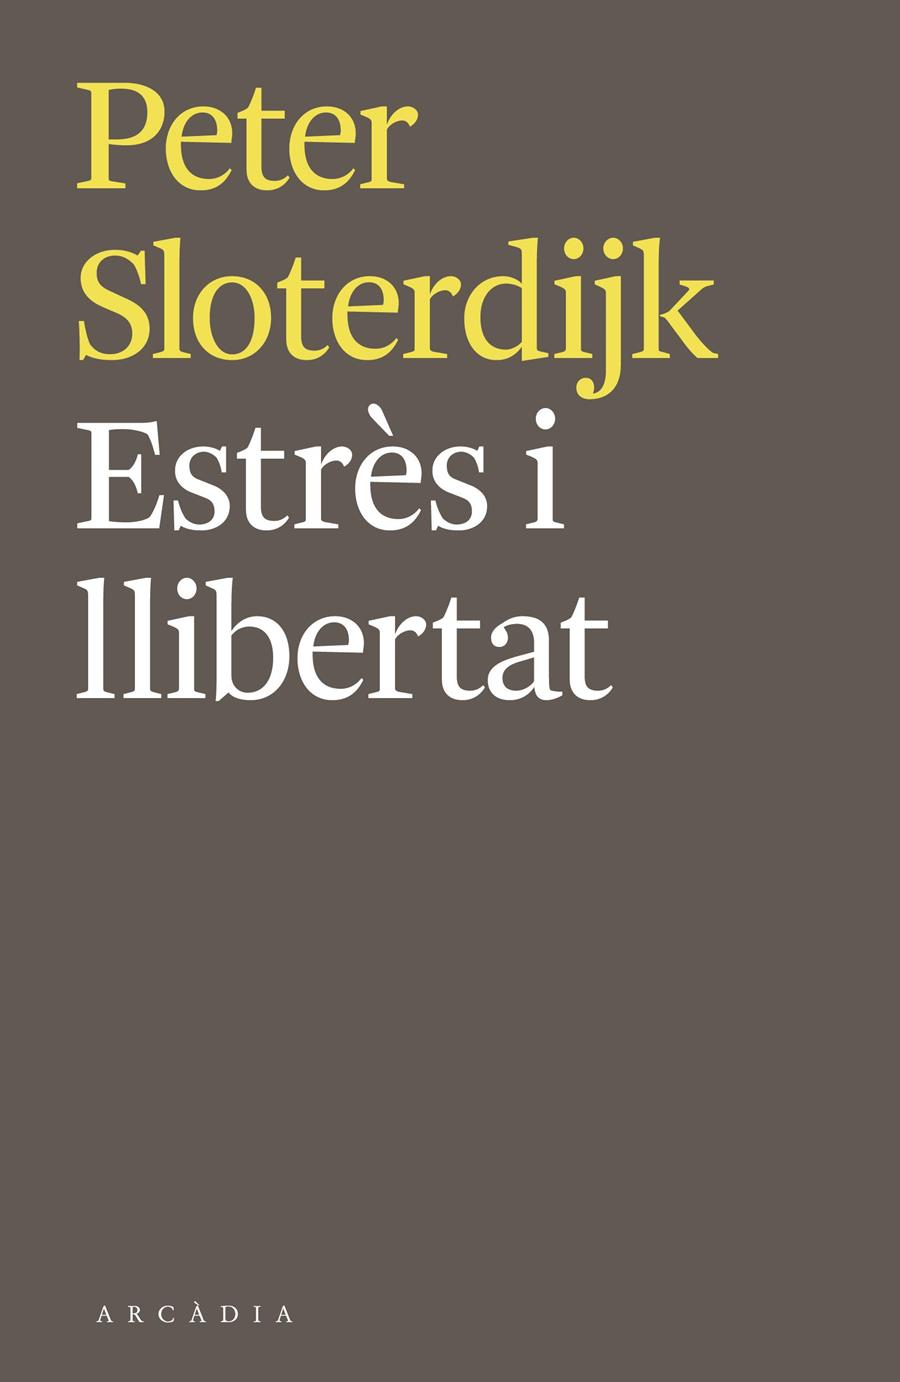 Estrès i llibertat | Sloterdijk, Peter | Cooperativa autogestionària